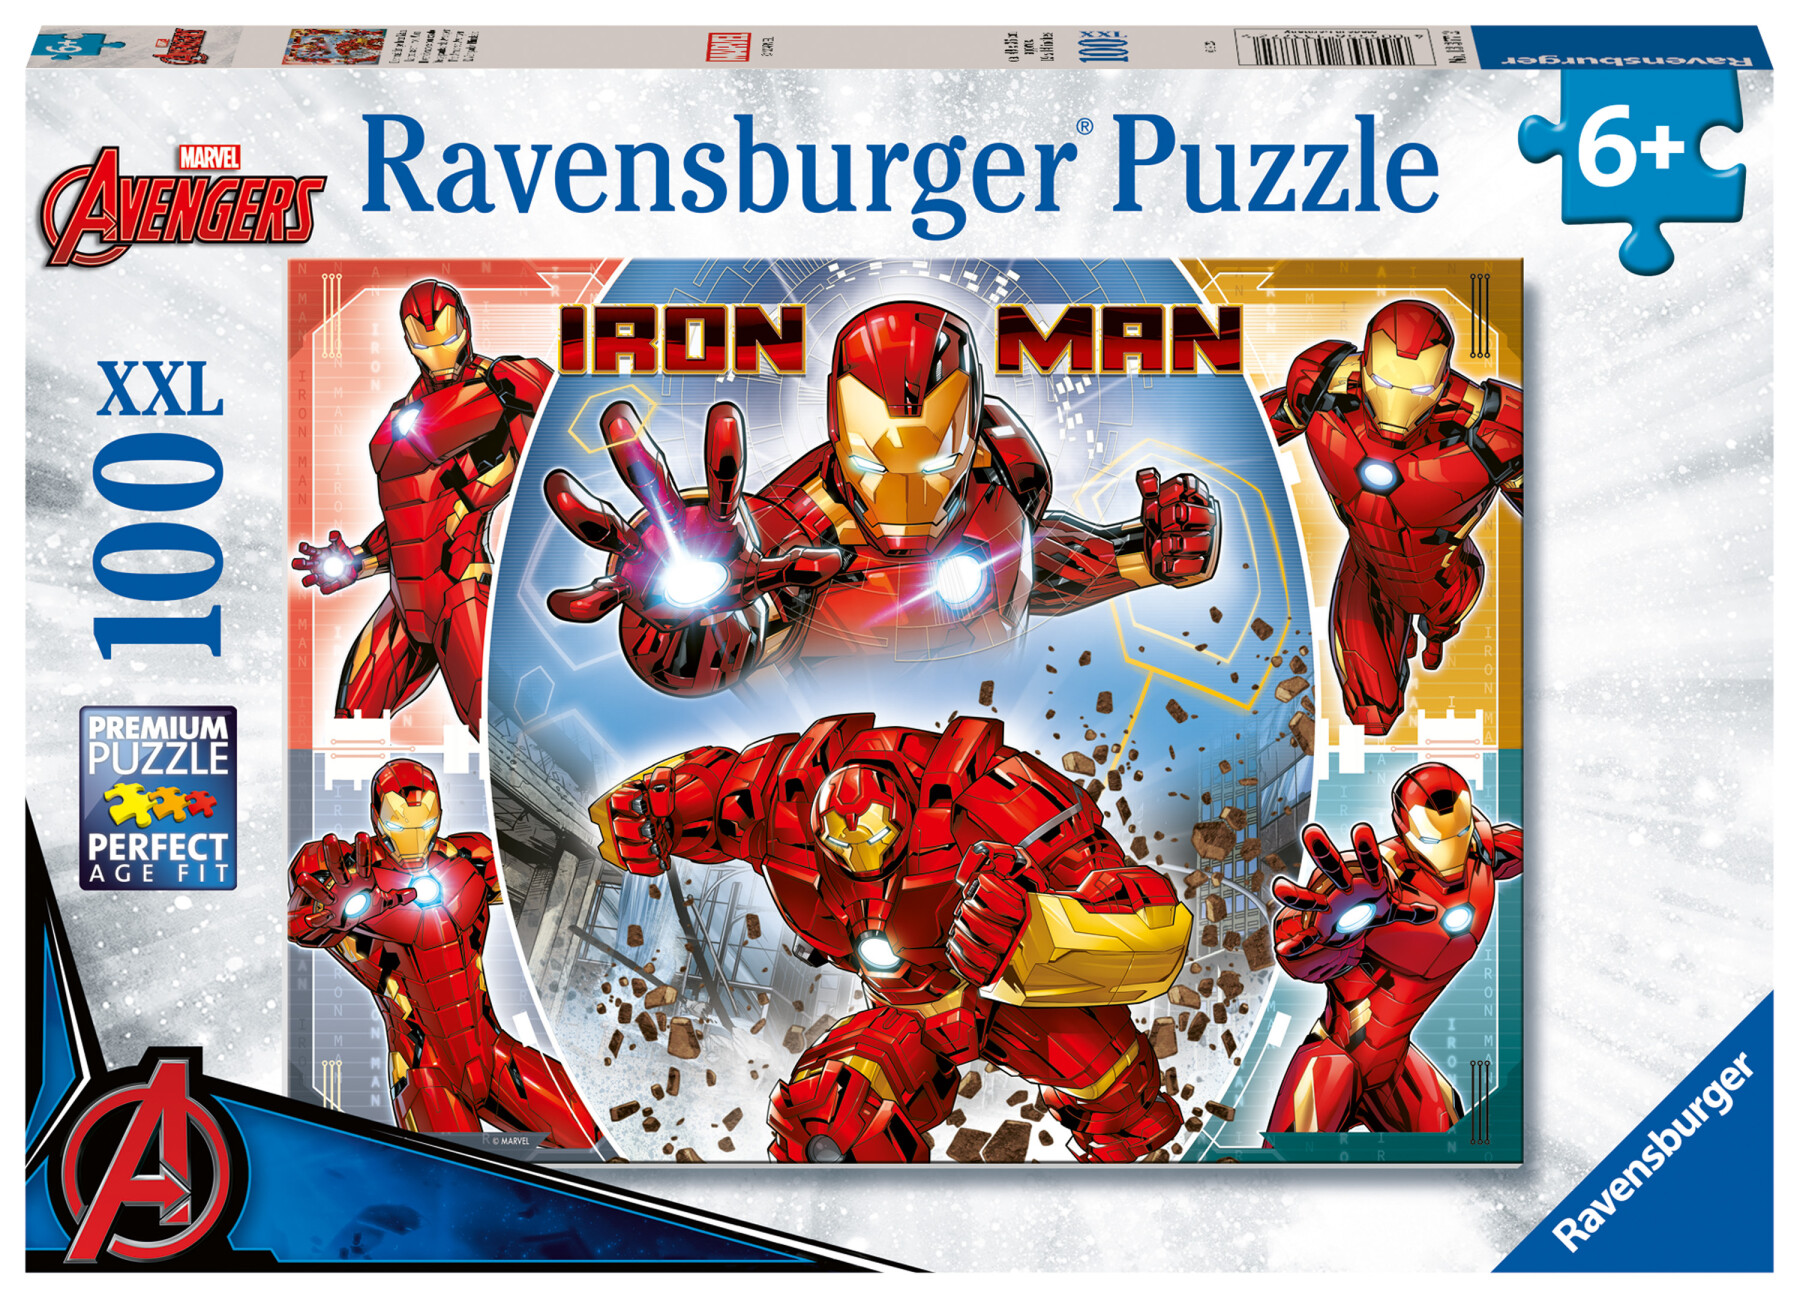 Ravensburger - puzzle iron man, 100 pezzi xxl, età raccomandata 6+ anni - RAVENSBURGER, Avengers